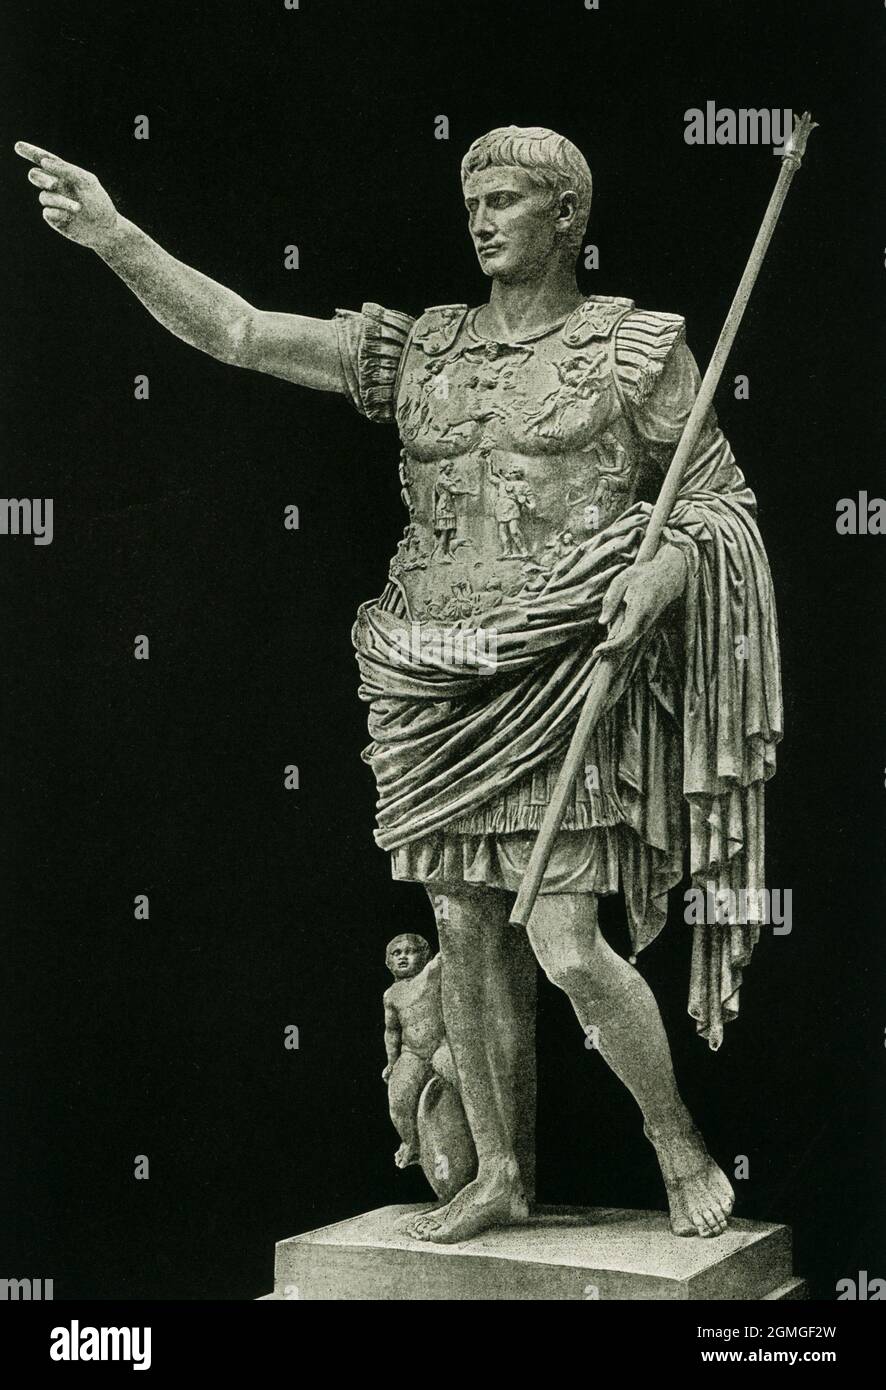 Augustus von Prima Porta ist eine Porträtstatue in voller Länge von Augustus Caesar, dem ersten Kaiser des Römischen Reiches. Diese Statue wurde auf den Anfang des 1. Jahrhunderts n. Chr. datiert. Es wurde in den Ruinen der Villa von Livia, der Frau des Augustus, in Prima Porta an der Via Flaminia gefunden. Es ist eine Statue des Kaiser selbst, die einen hoch dekorierten Kuirass trägt und seinen Mantel (Paludamentum) trägt. Dieses Foto stammt aus dem Jahr 1910. Stockfoto